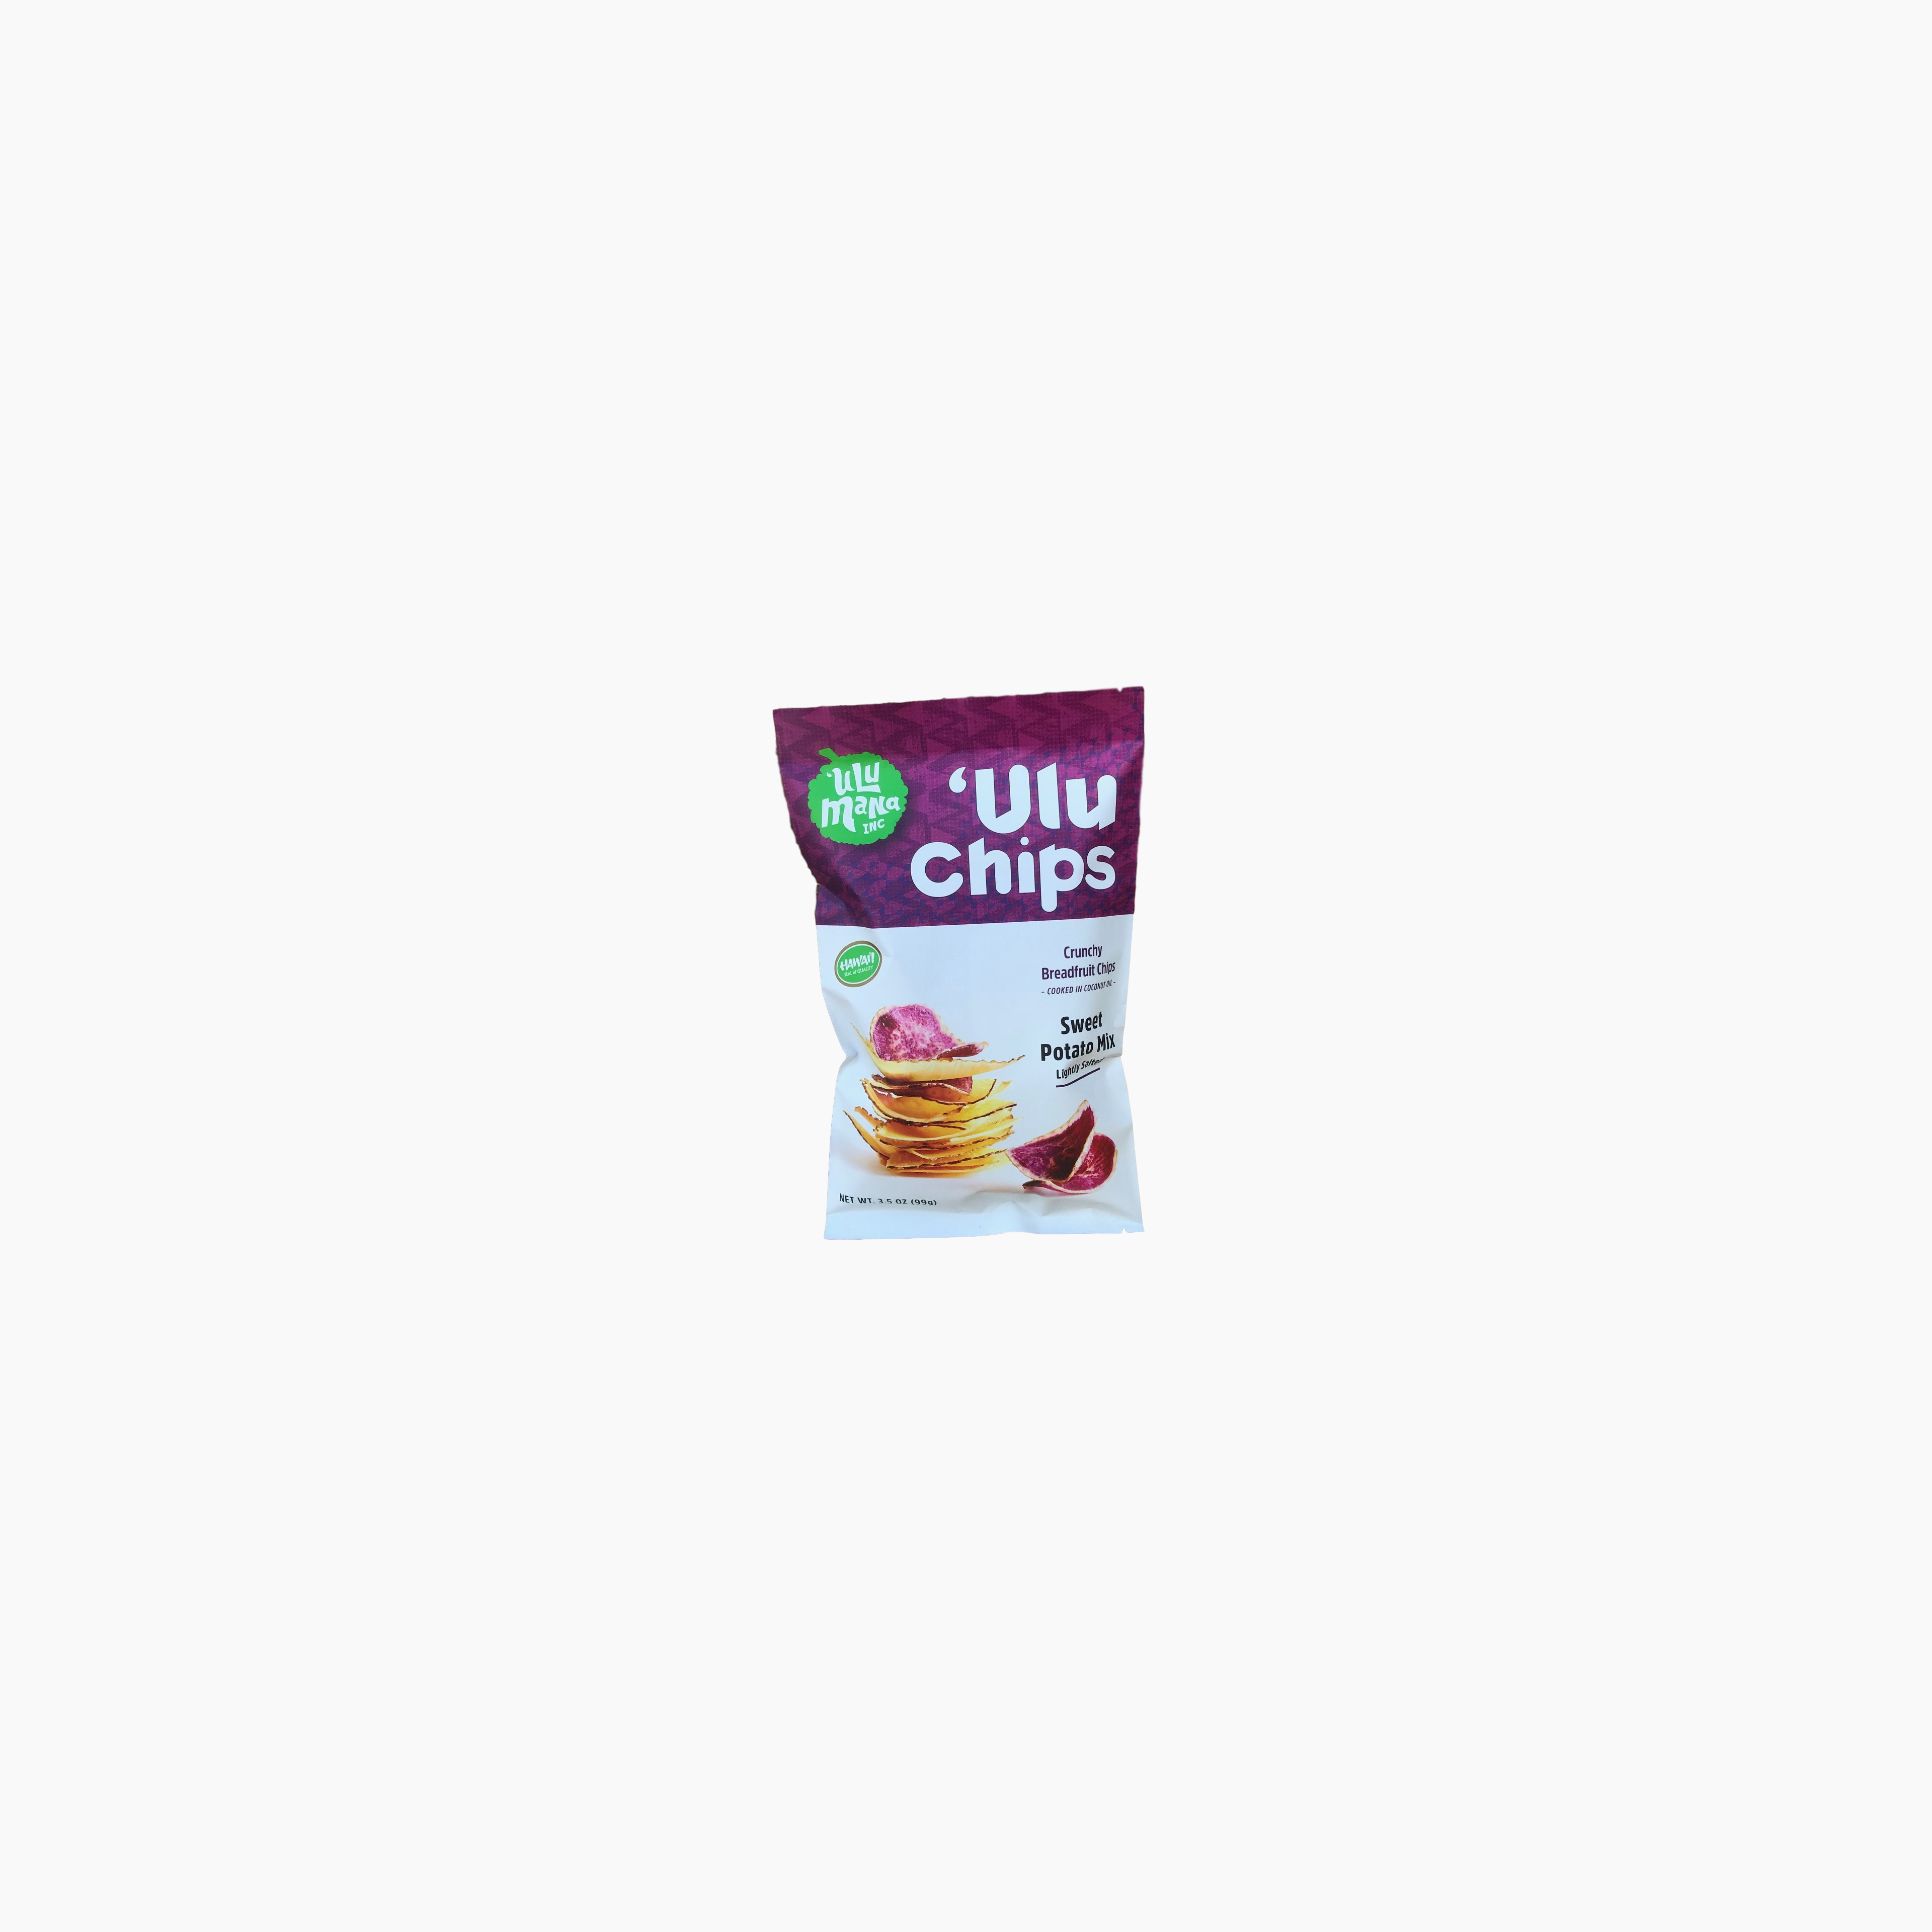 Sweet Potato Mix 'Ulu Chips 3.5oz